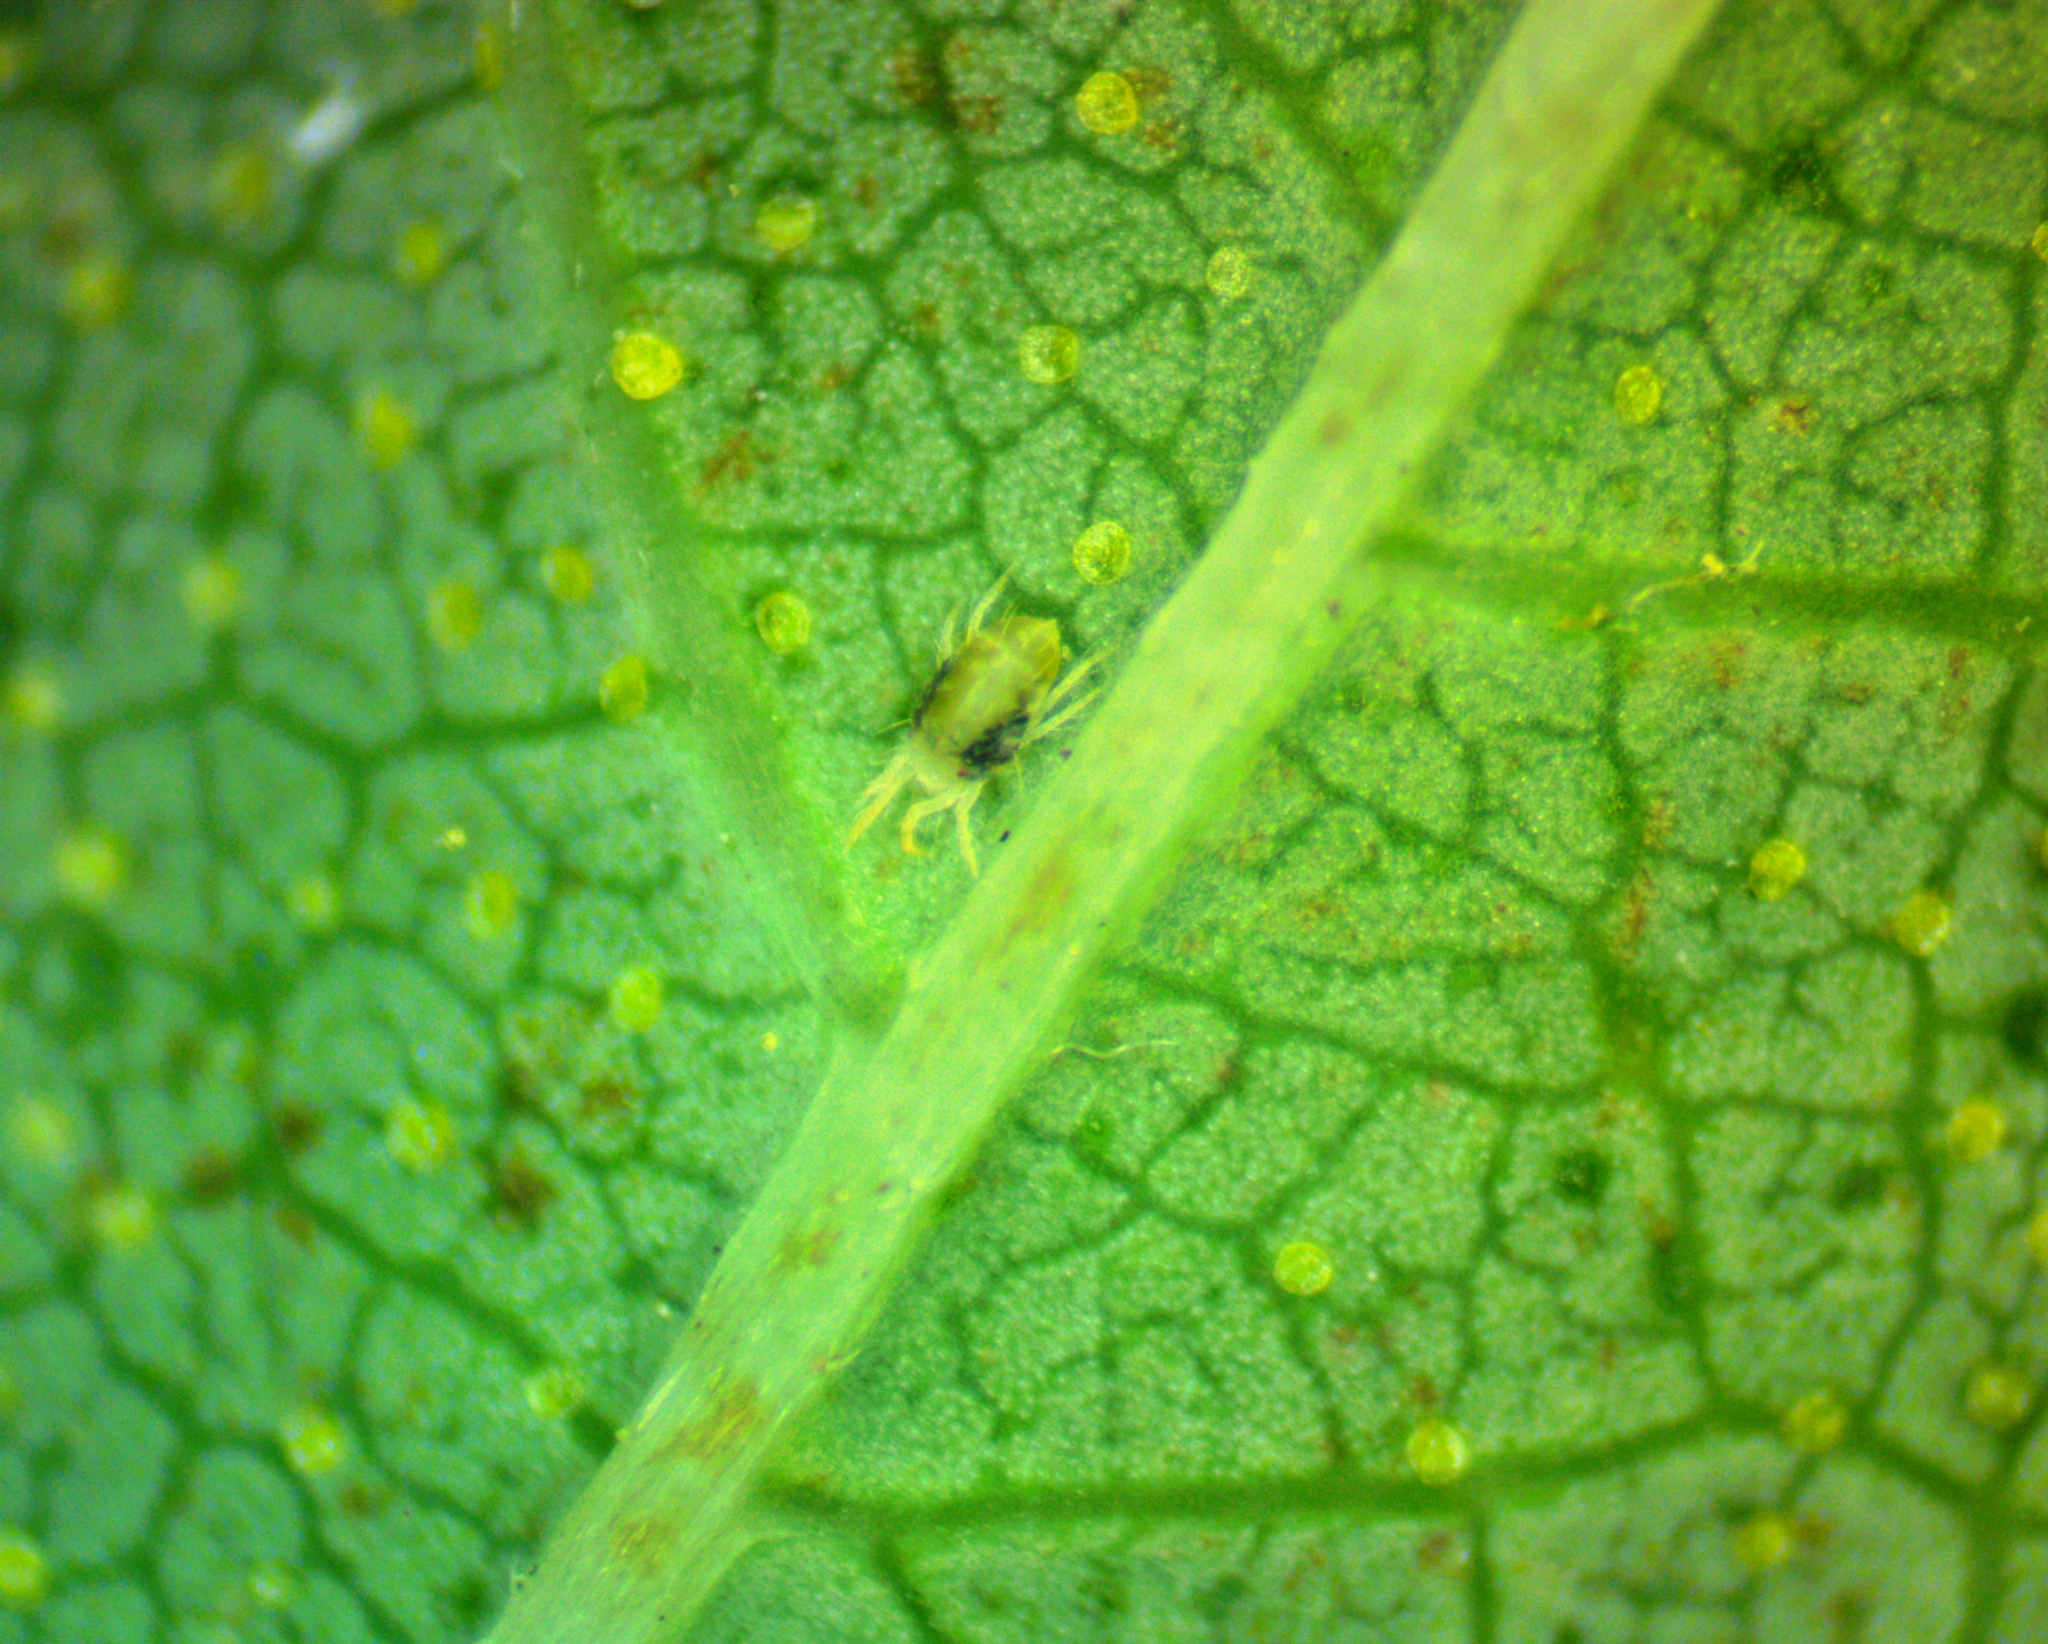 Adult mite on leaf.